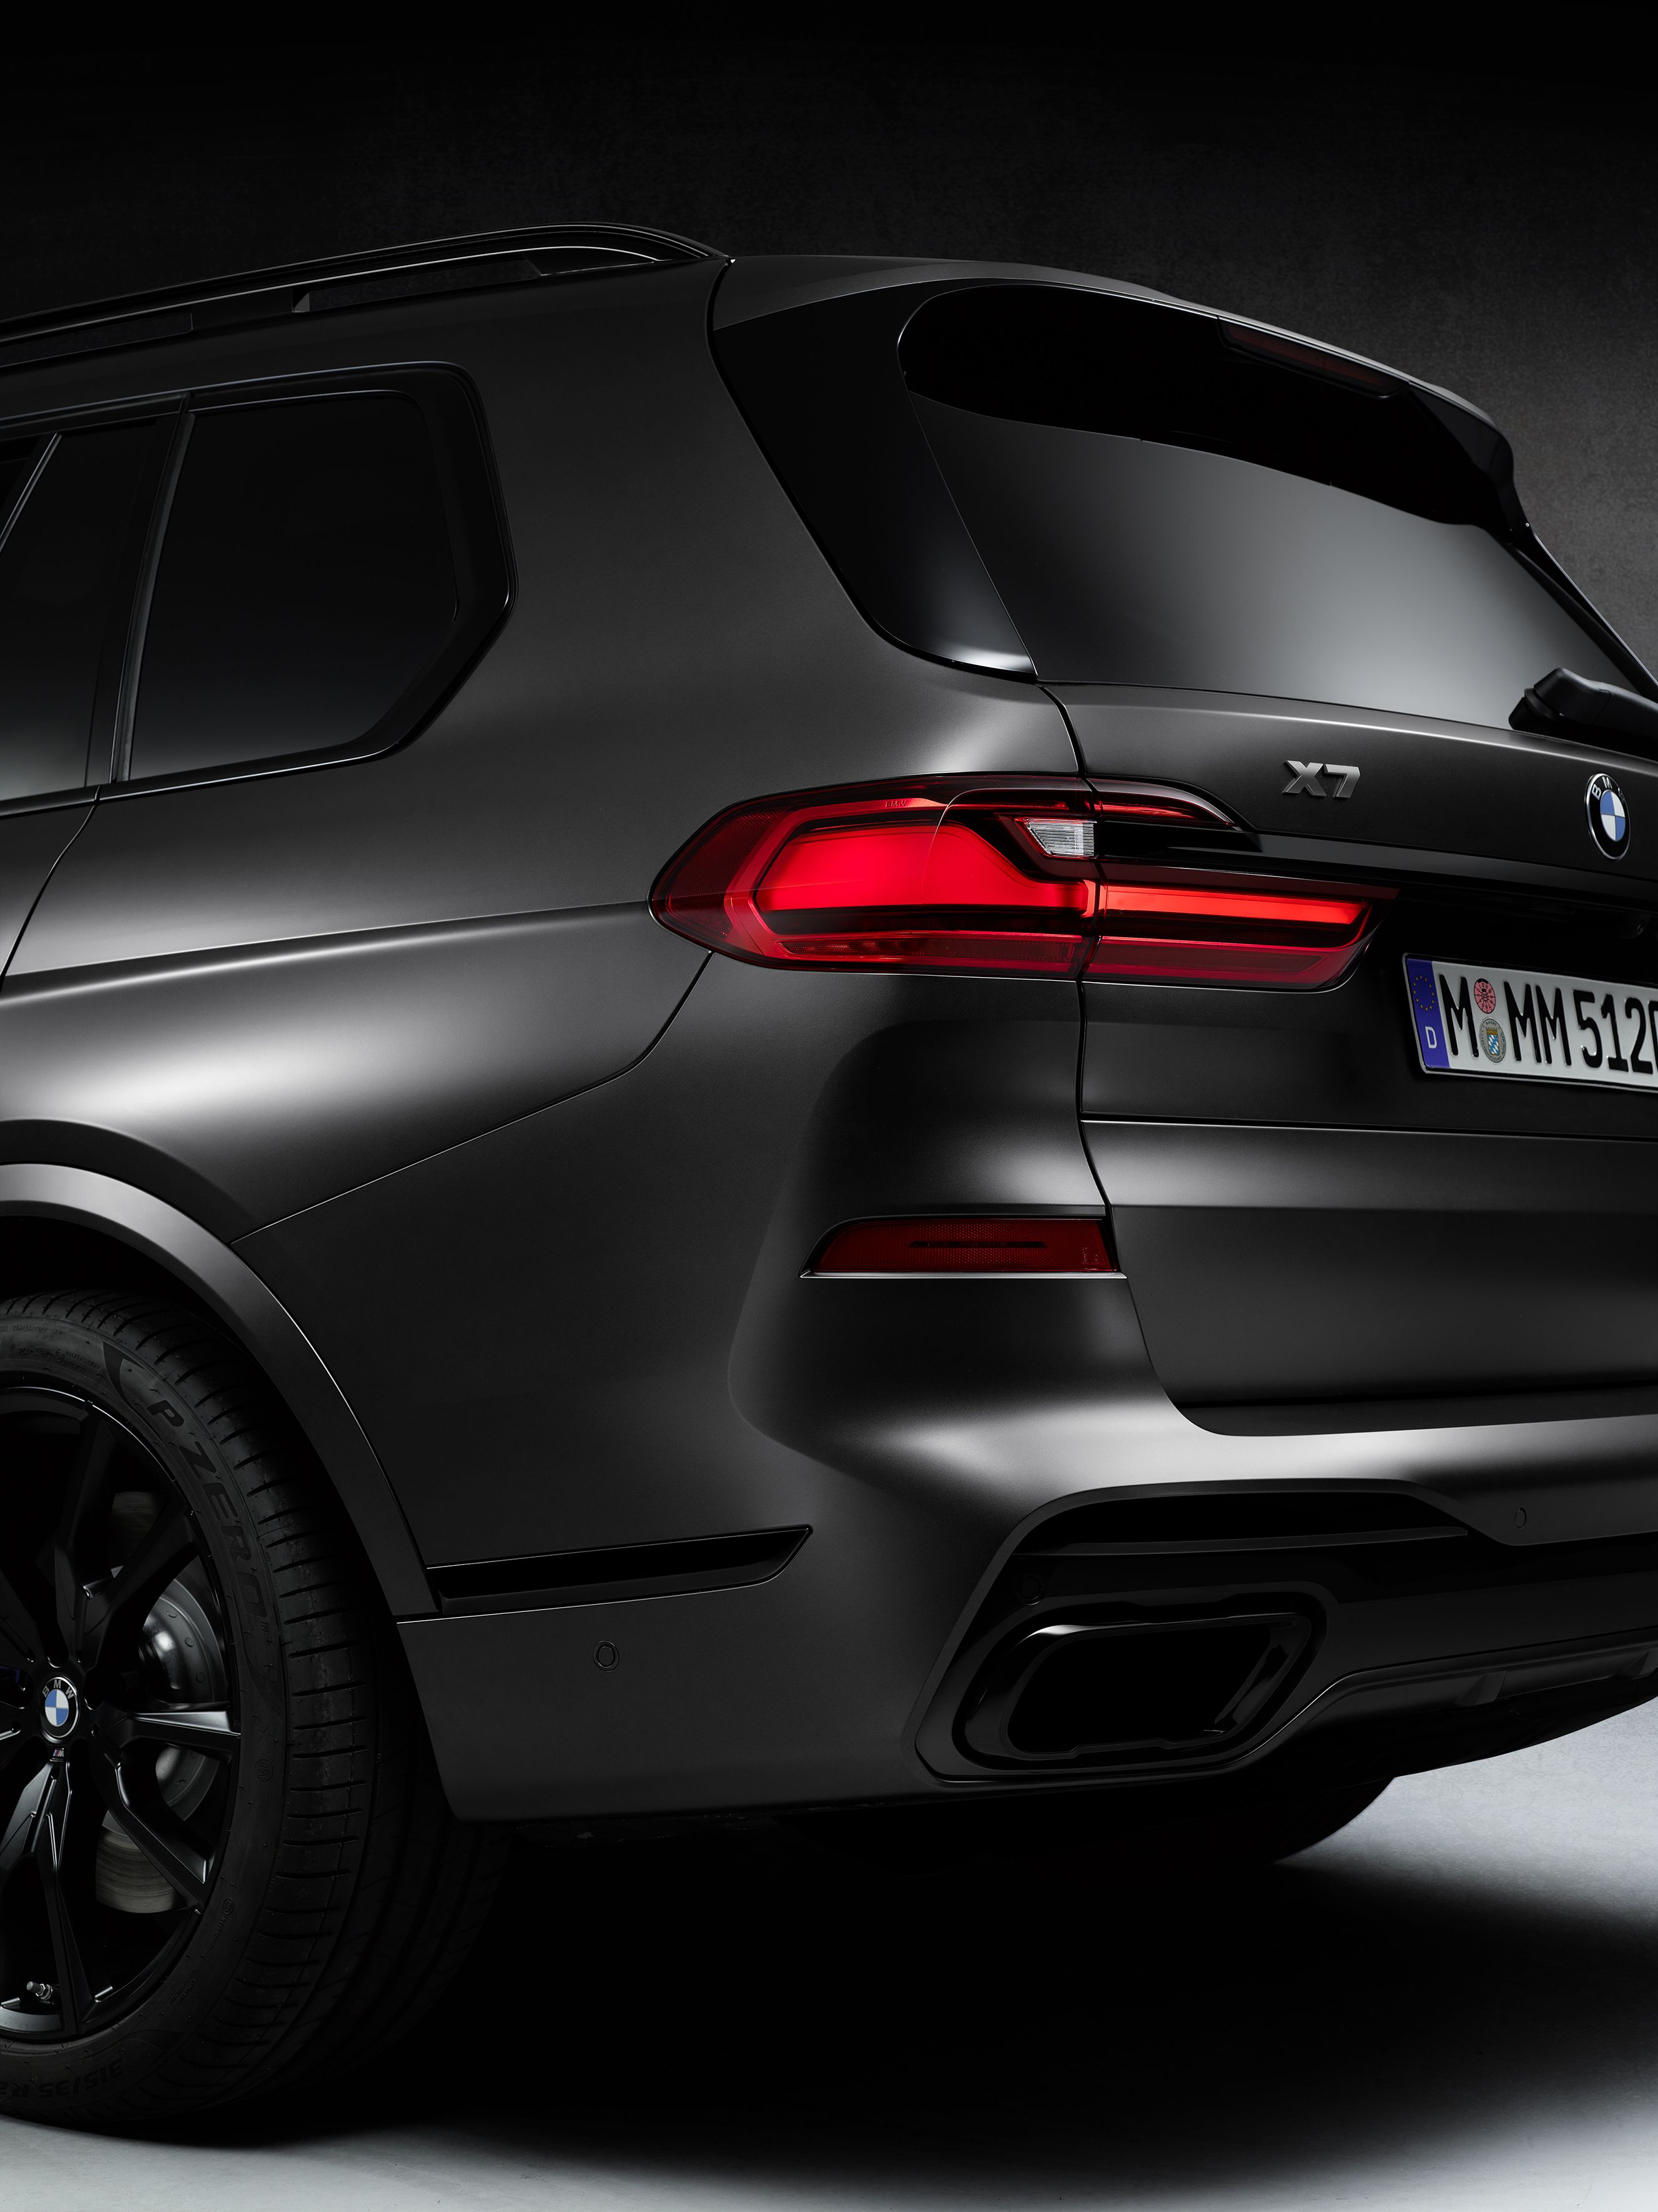 BMW X7 Dark Shadow Edition Darkened X7 M50i You Probably Want